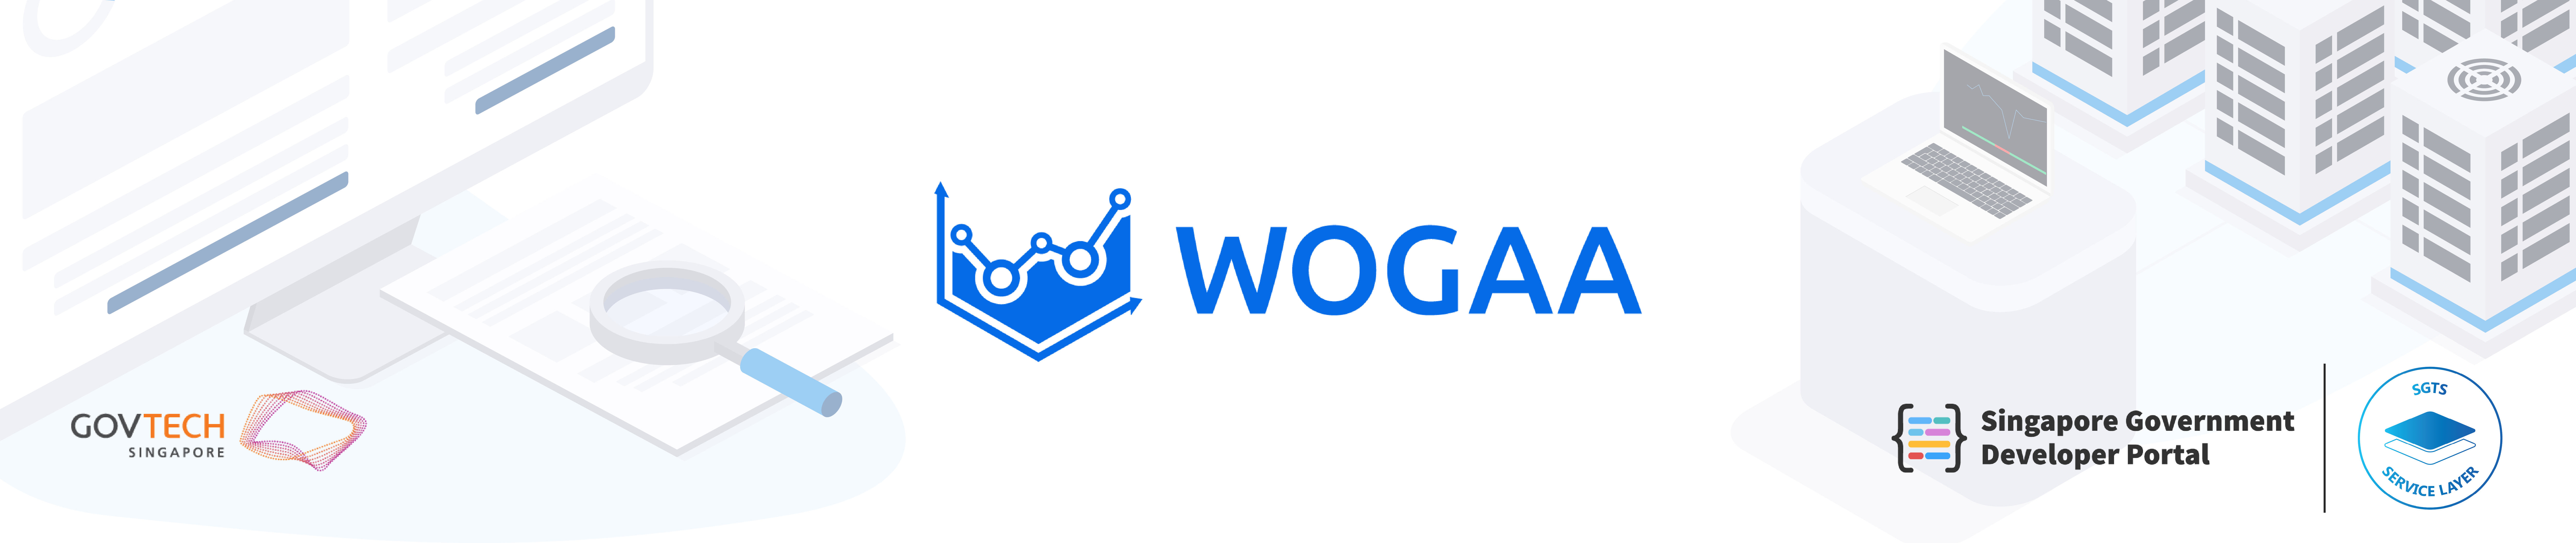 WOGAA header banner for Singapore Government Developer Portal